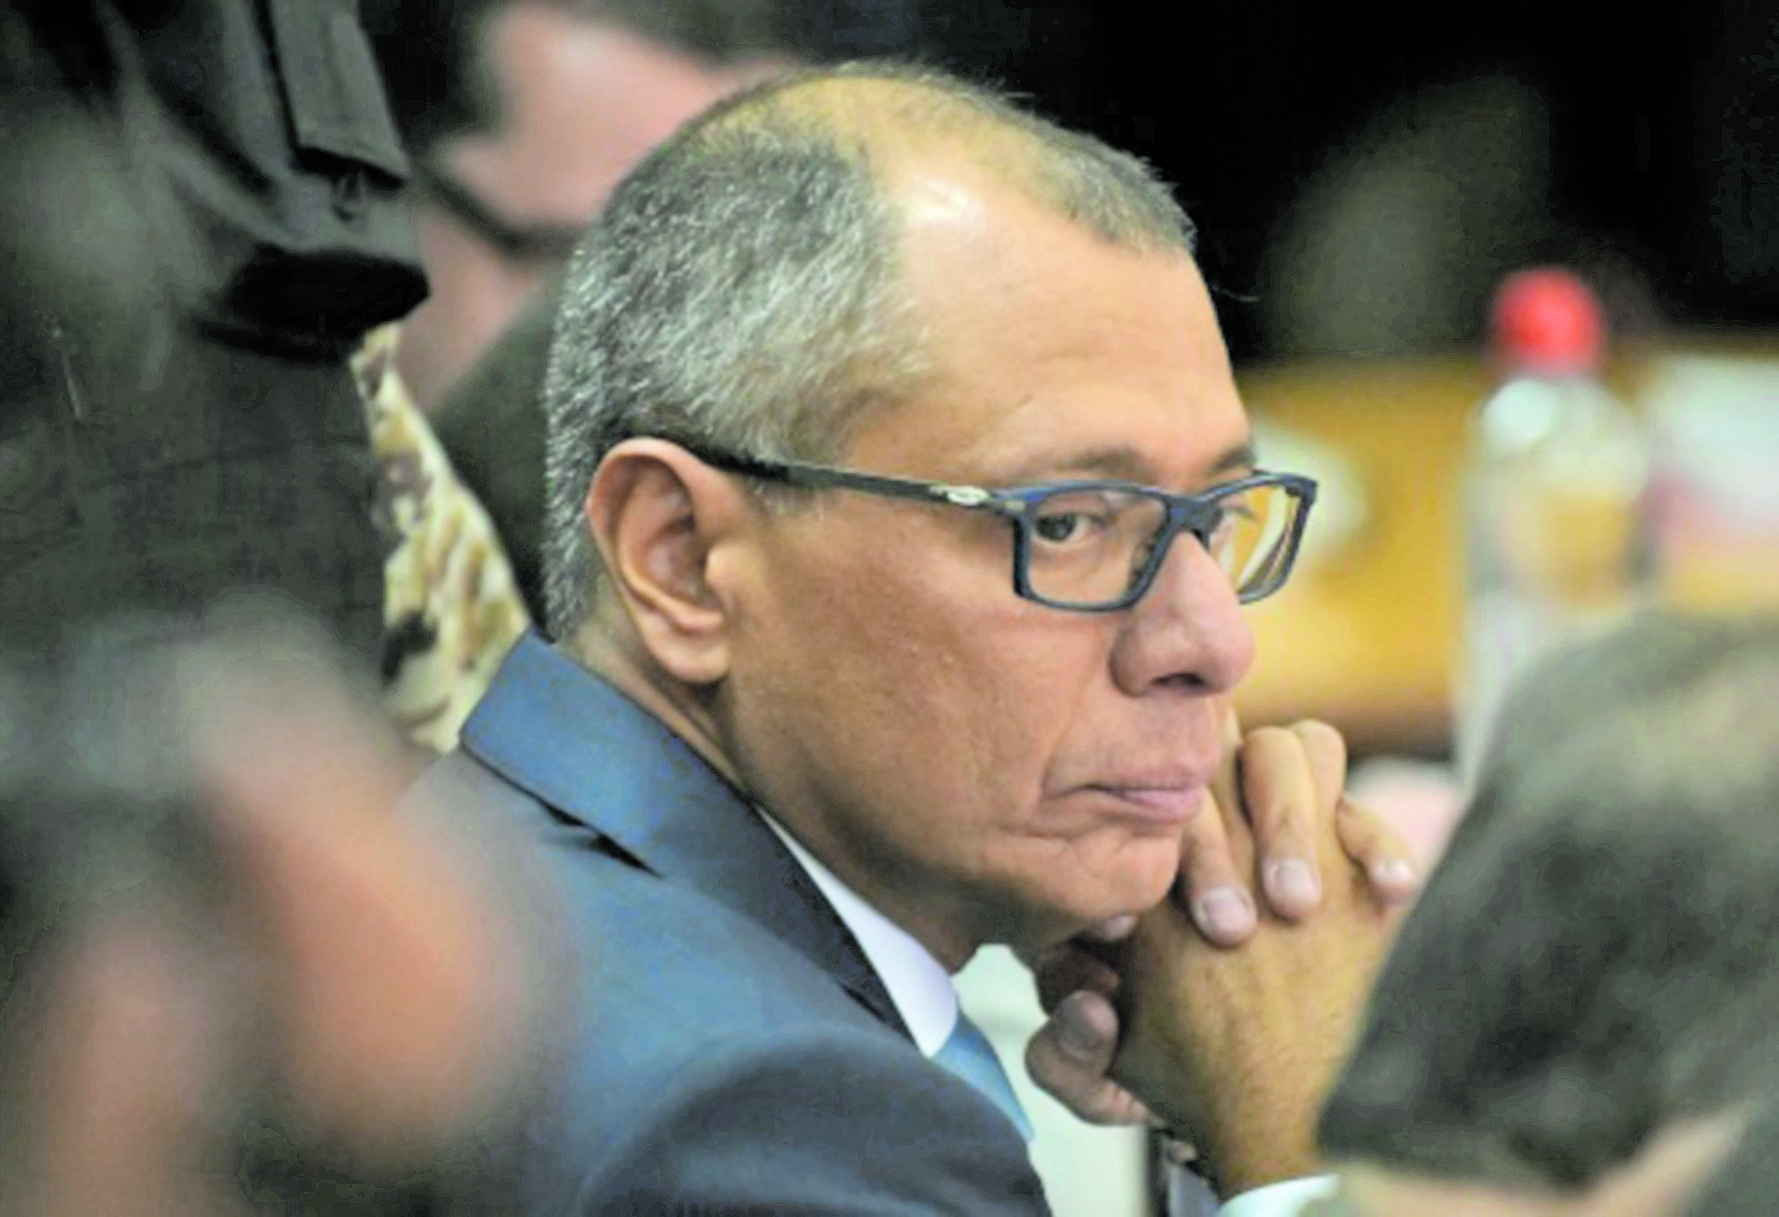 El vicepresidente de Ecuador, Jorge Glas, fue condenado en diciembre de 2017 a seis años de prisión por su participación en la trama de corrupción con Odebrecht.